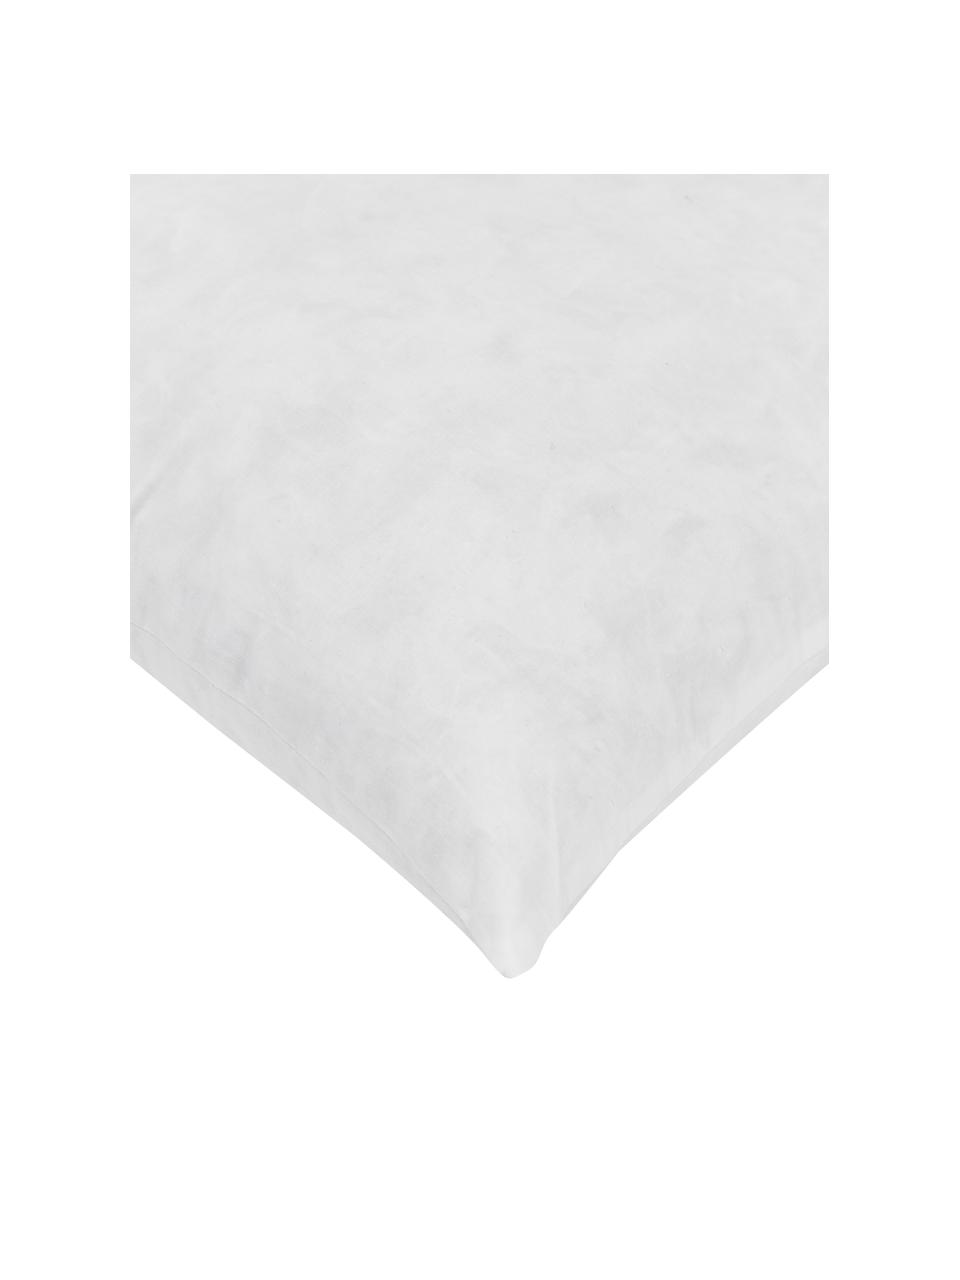 Výplň dekorativního polštáře Comfort, Bílá, Š 40 cm, D 40 cm